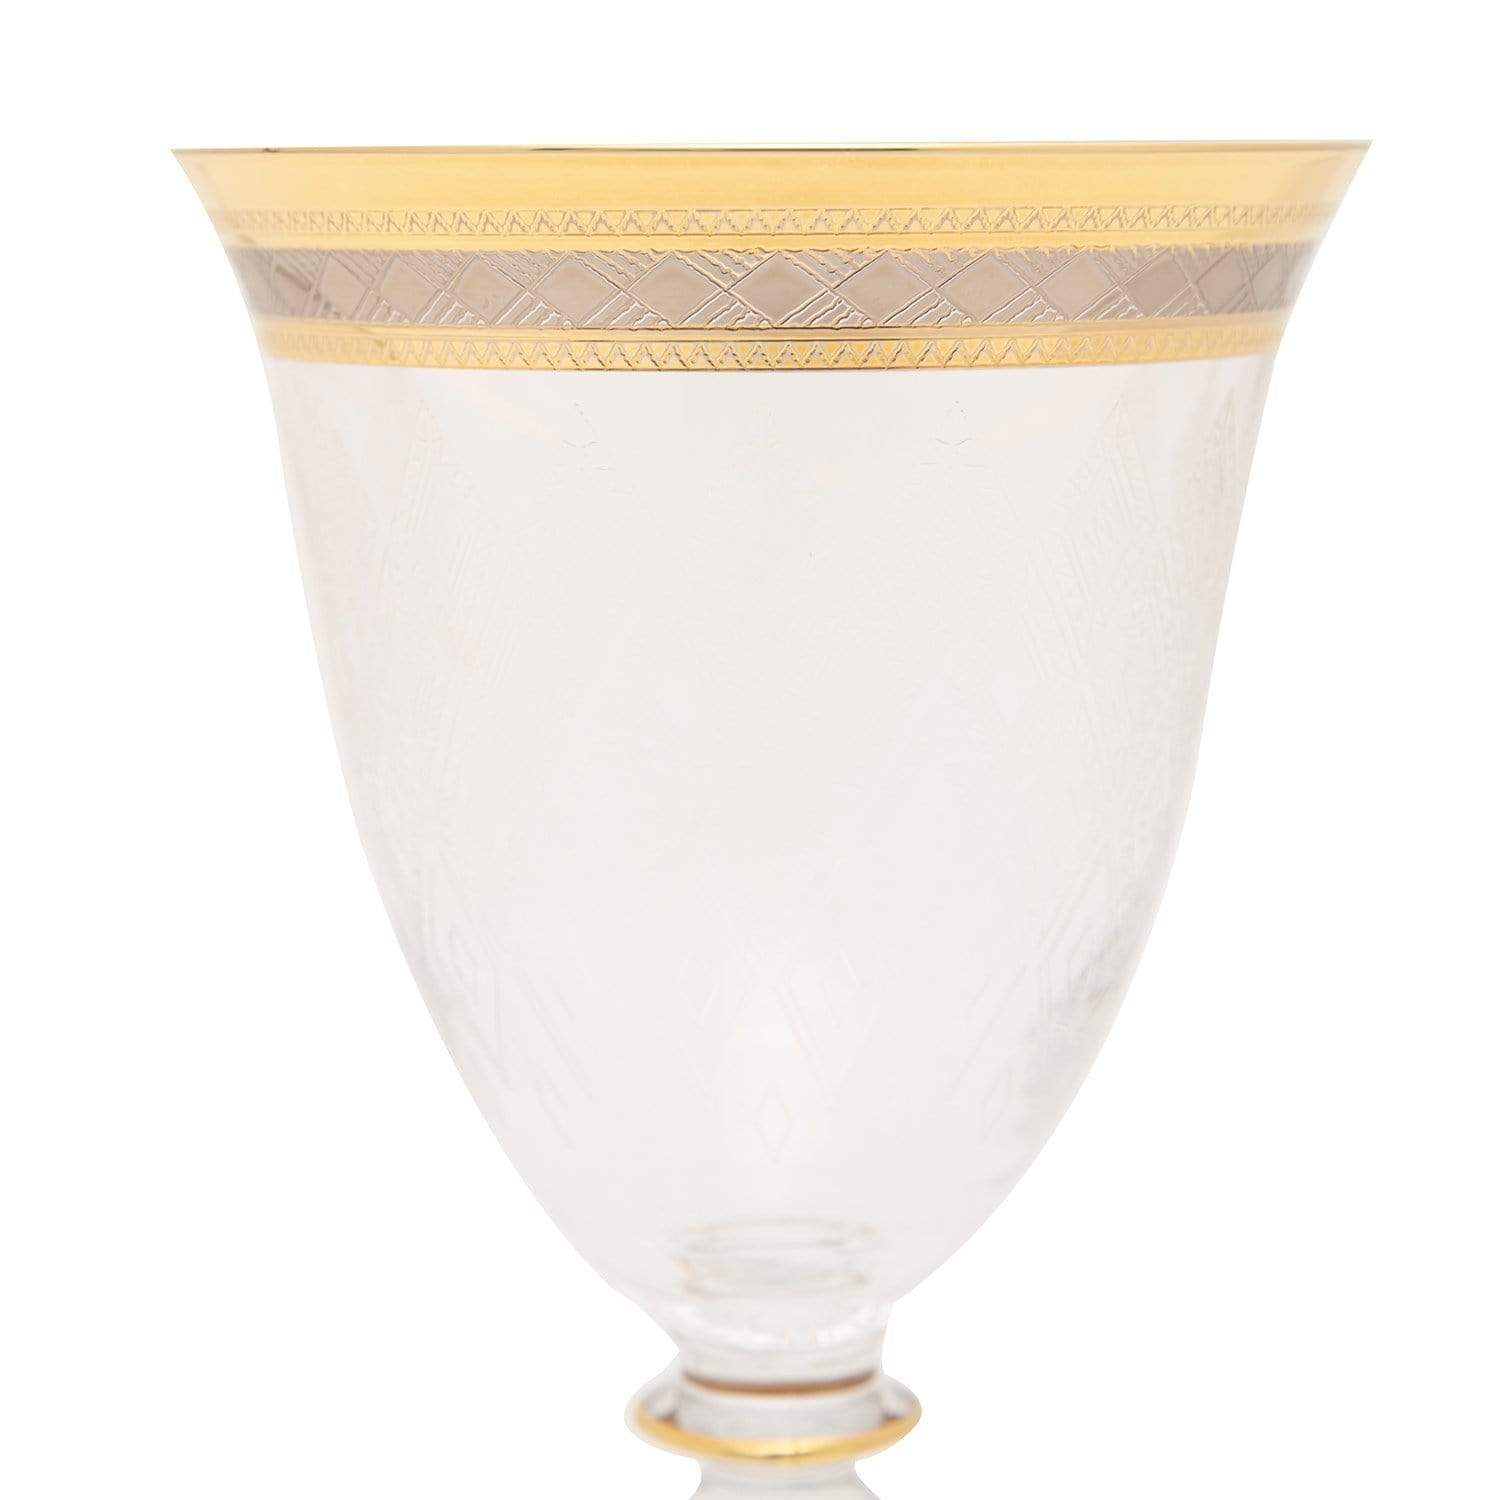 Combi Morven Goblet Set - Gold, 260 ml, Large, 6 Piece - G751GP/96 - Jashanmal Home